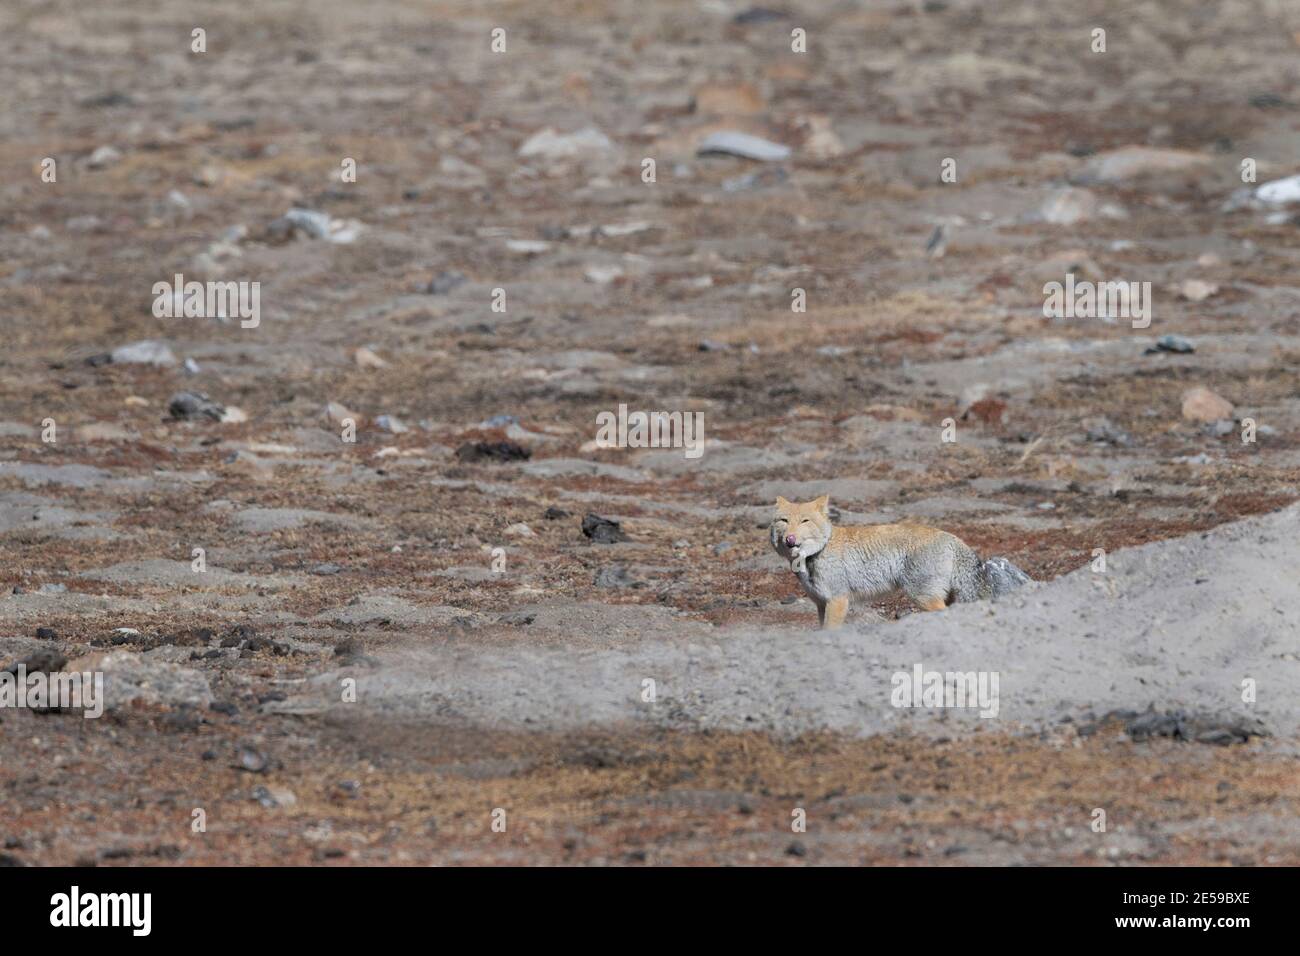 L'image du renard tibétain ou renard de sable (Vulpes ferrilata) était takenat Sikkim, Inde, Asie Banque D'Images